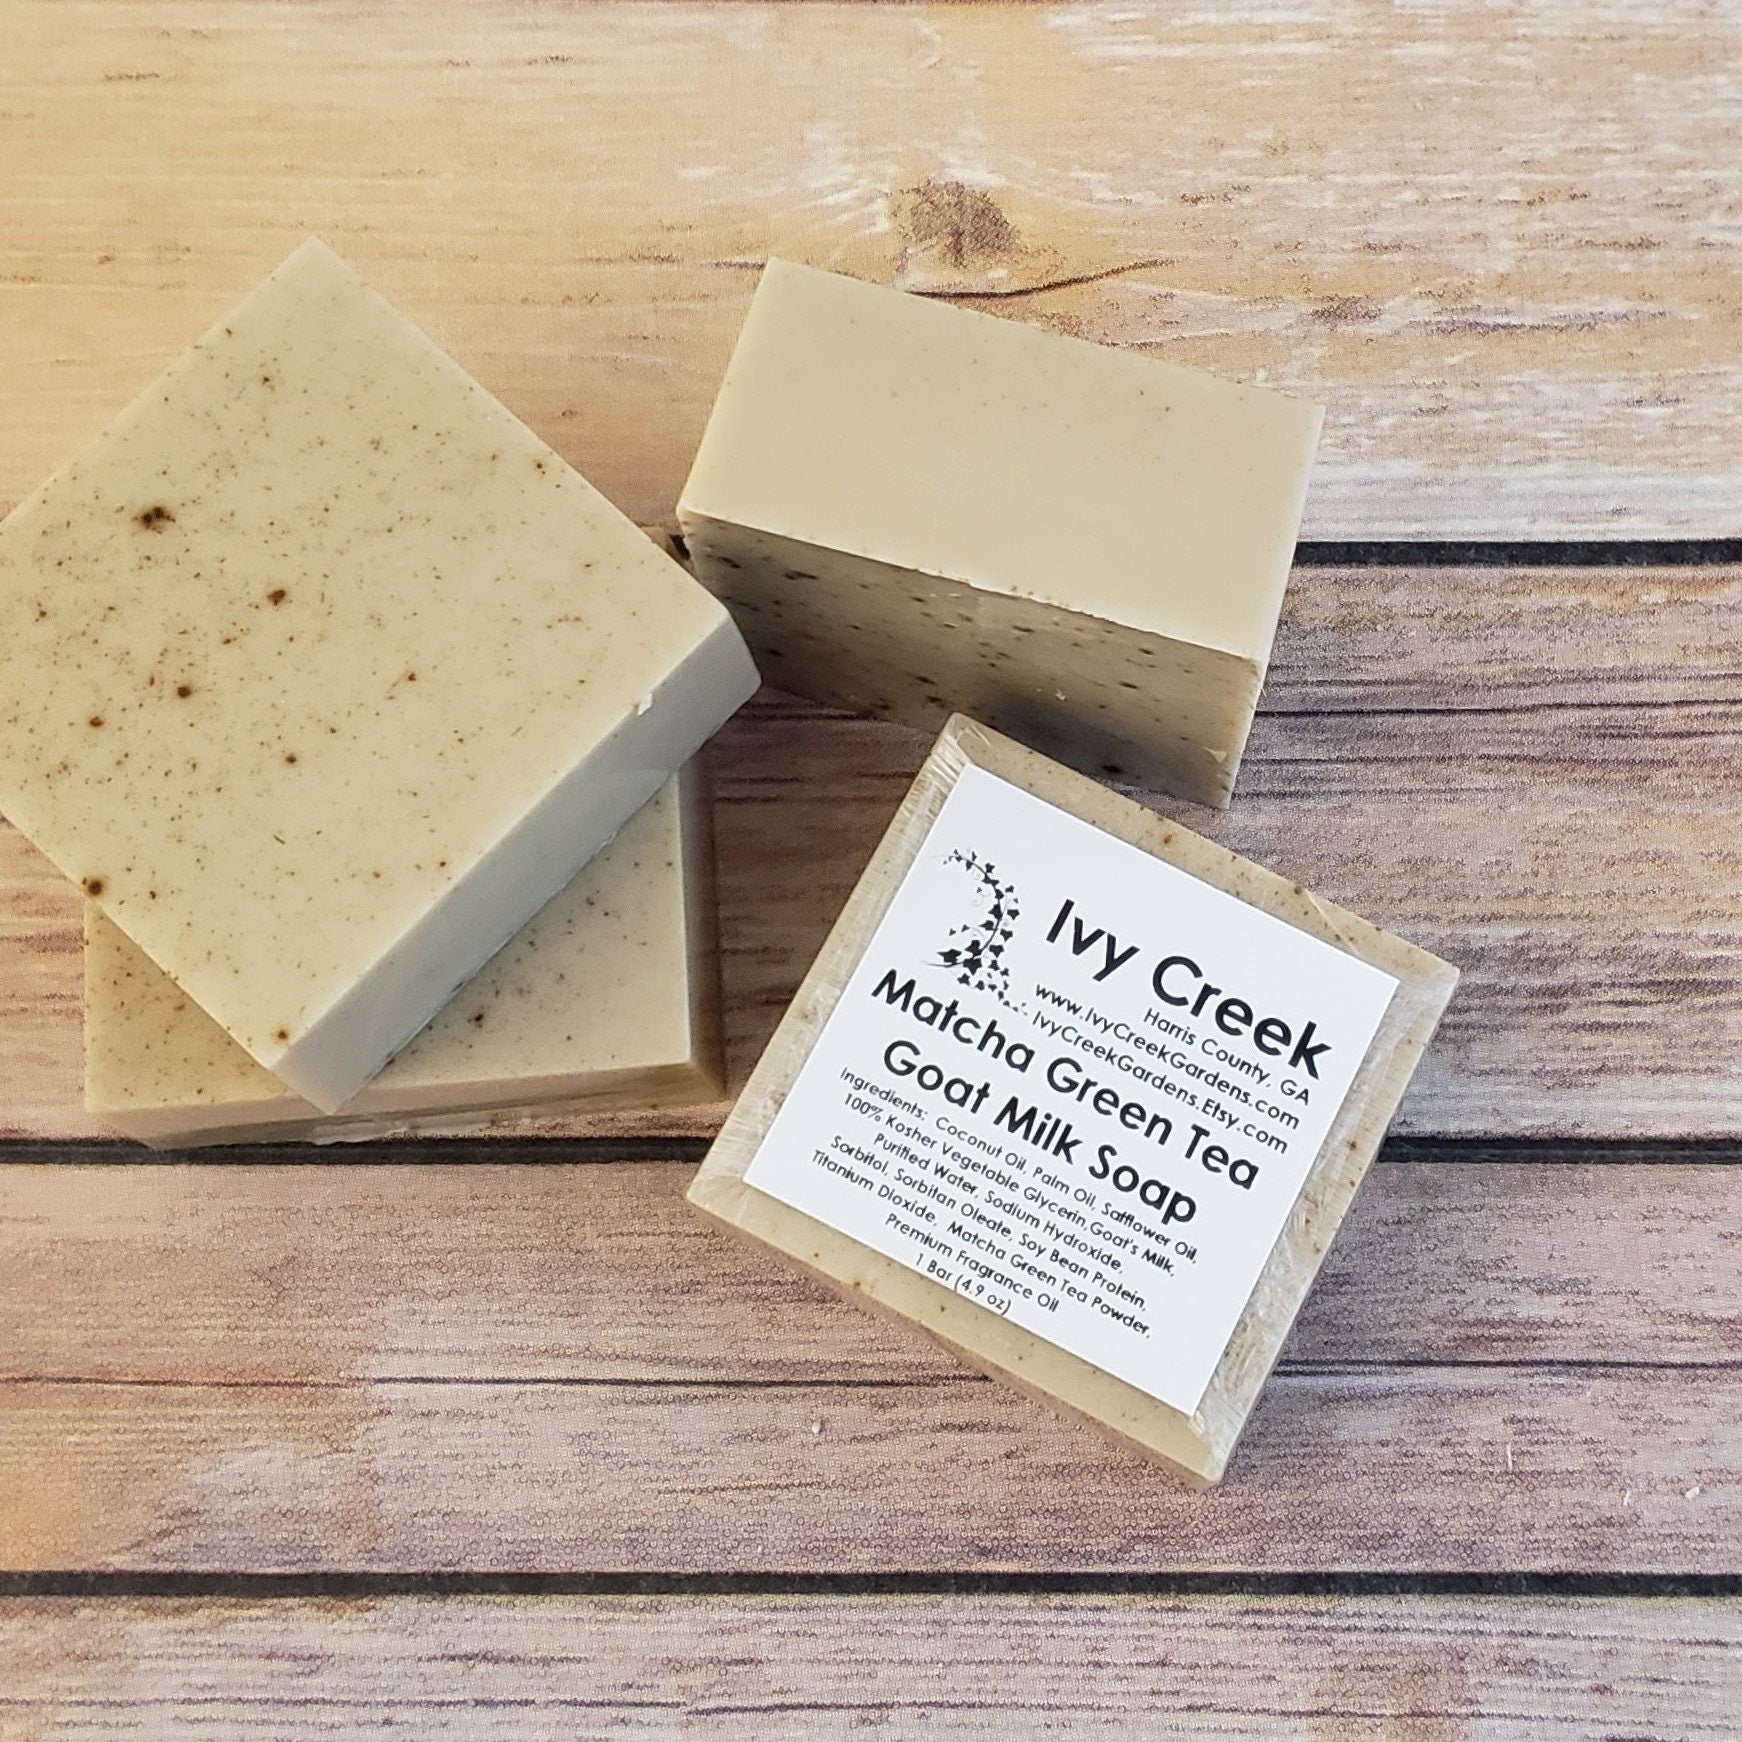 Ivy Creek Matcha Green Tea Goat Milk Soap | Natural and Nourishing | Clean Green Tea Scent - 4.9 oz bar